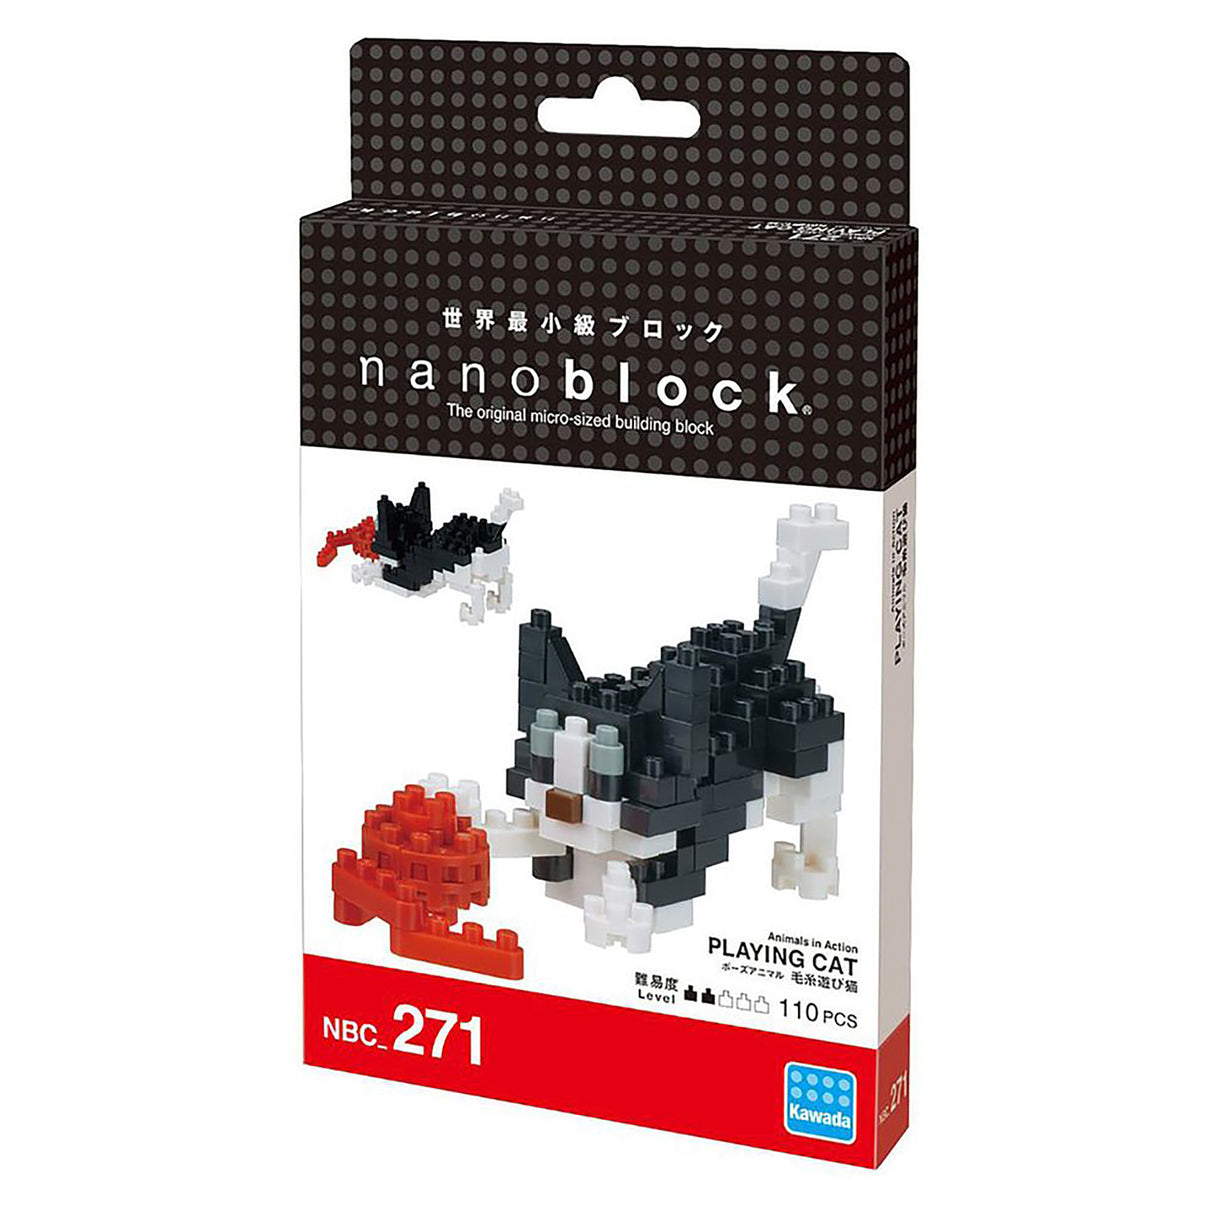 nanoblock - Playing Cat (110 pieces)